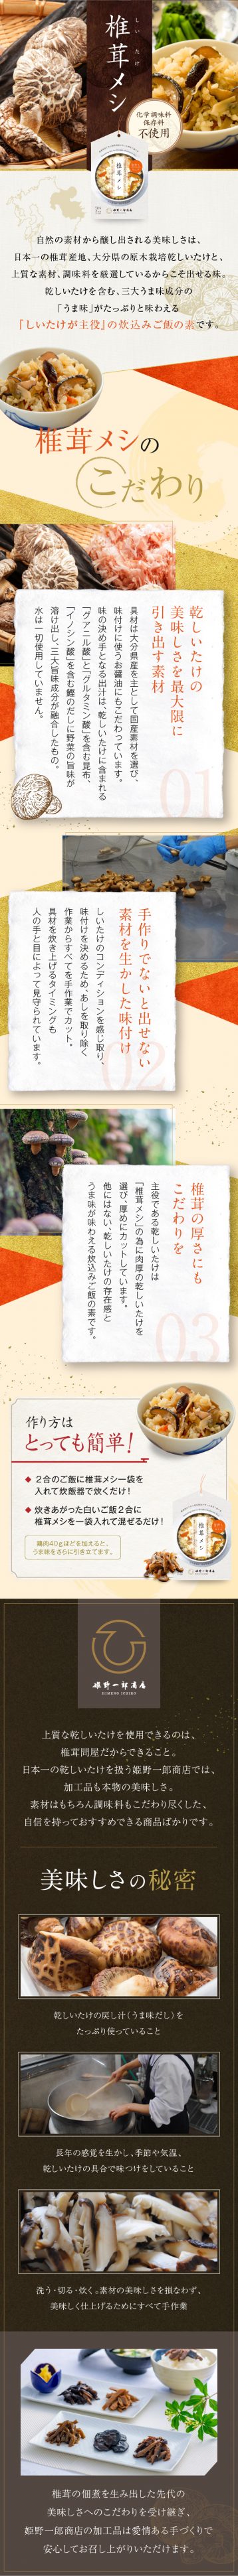 炊込みご飯の素「椎茸メシ」